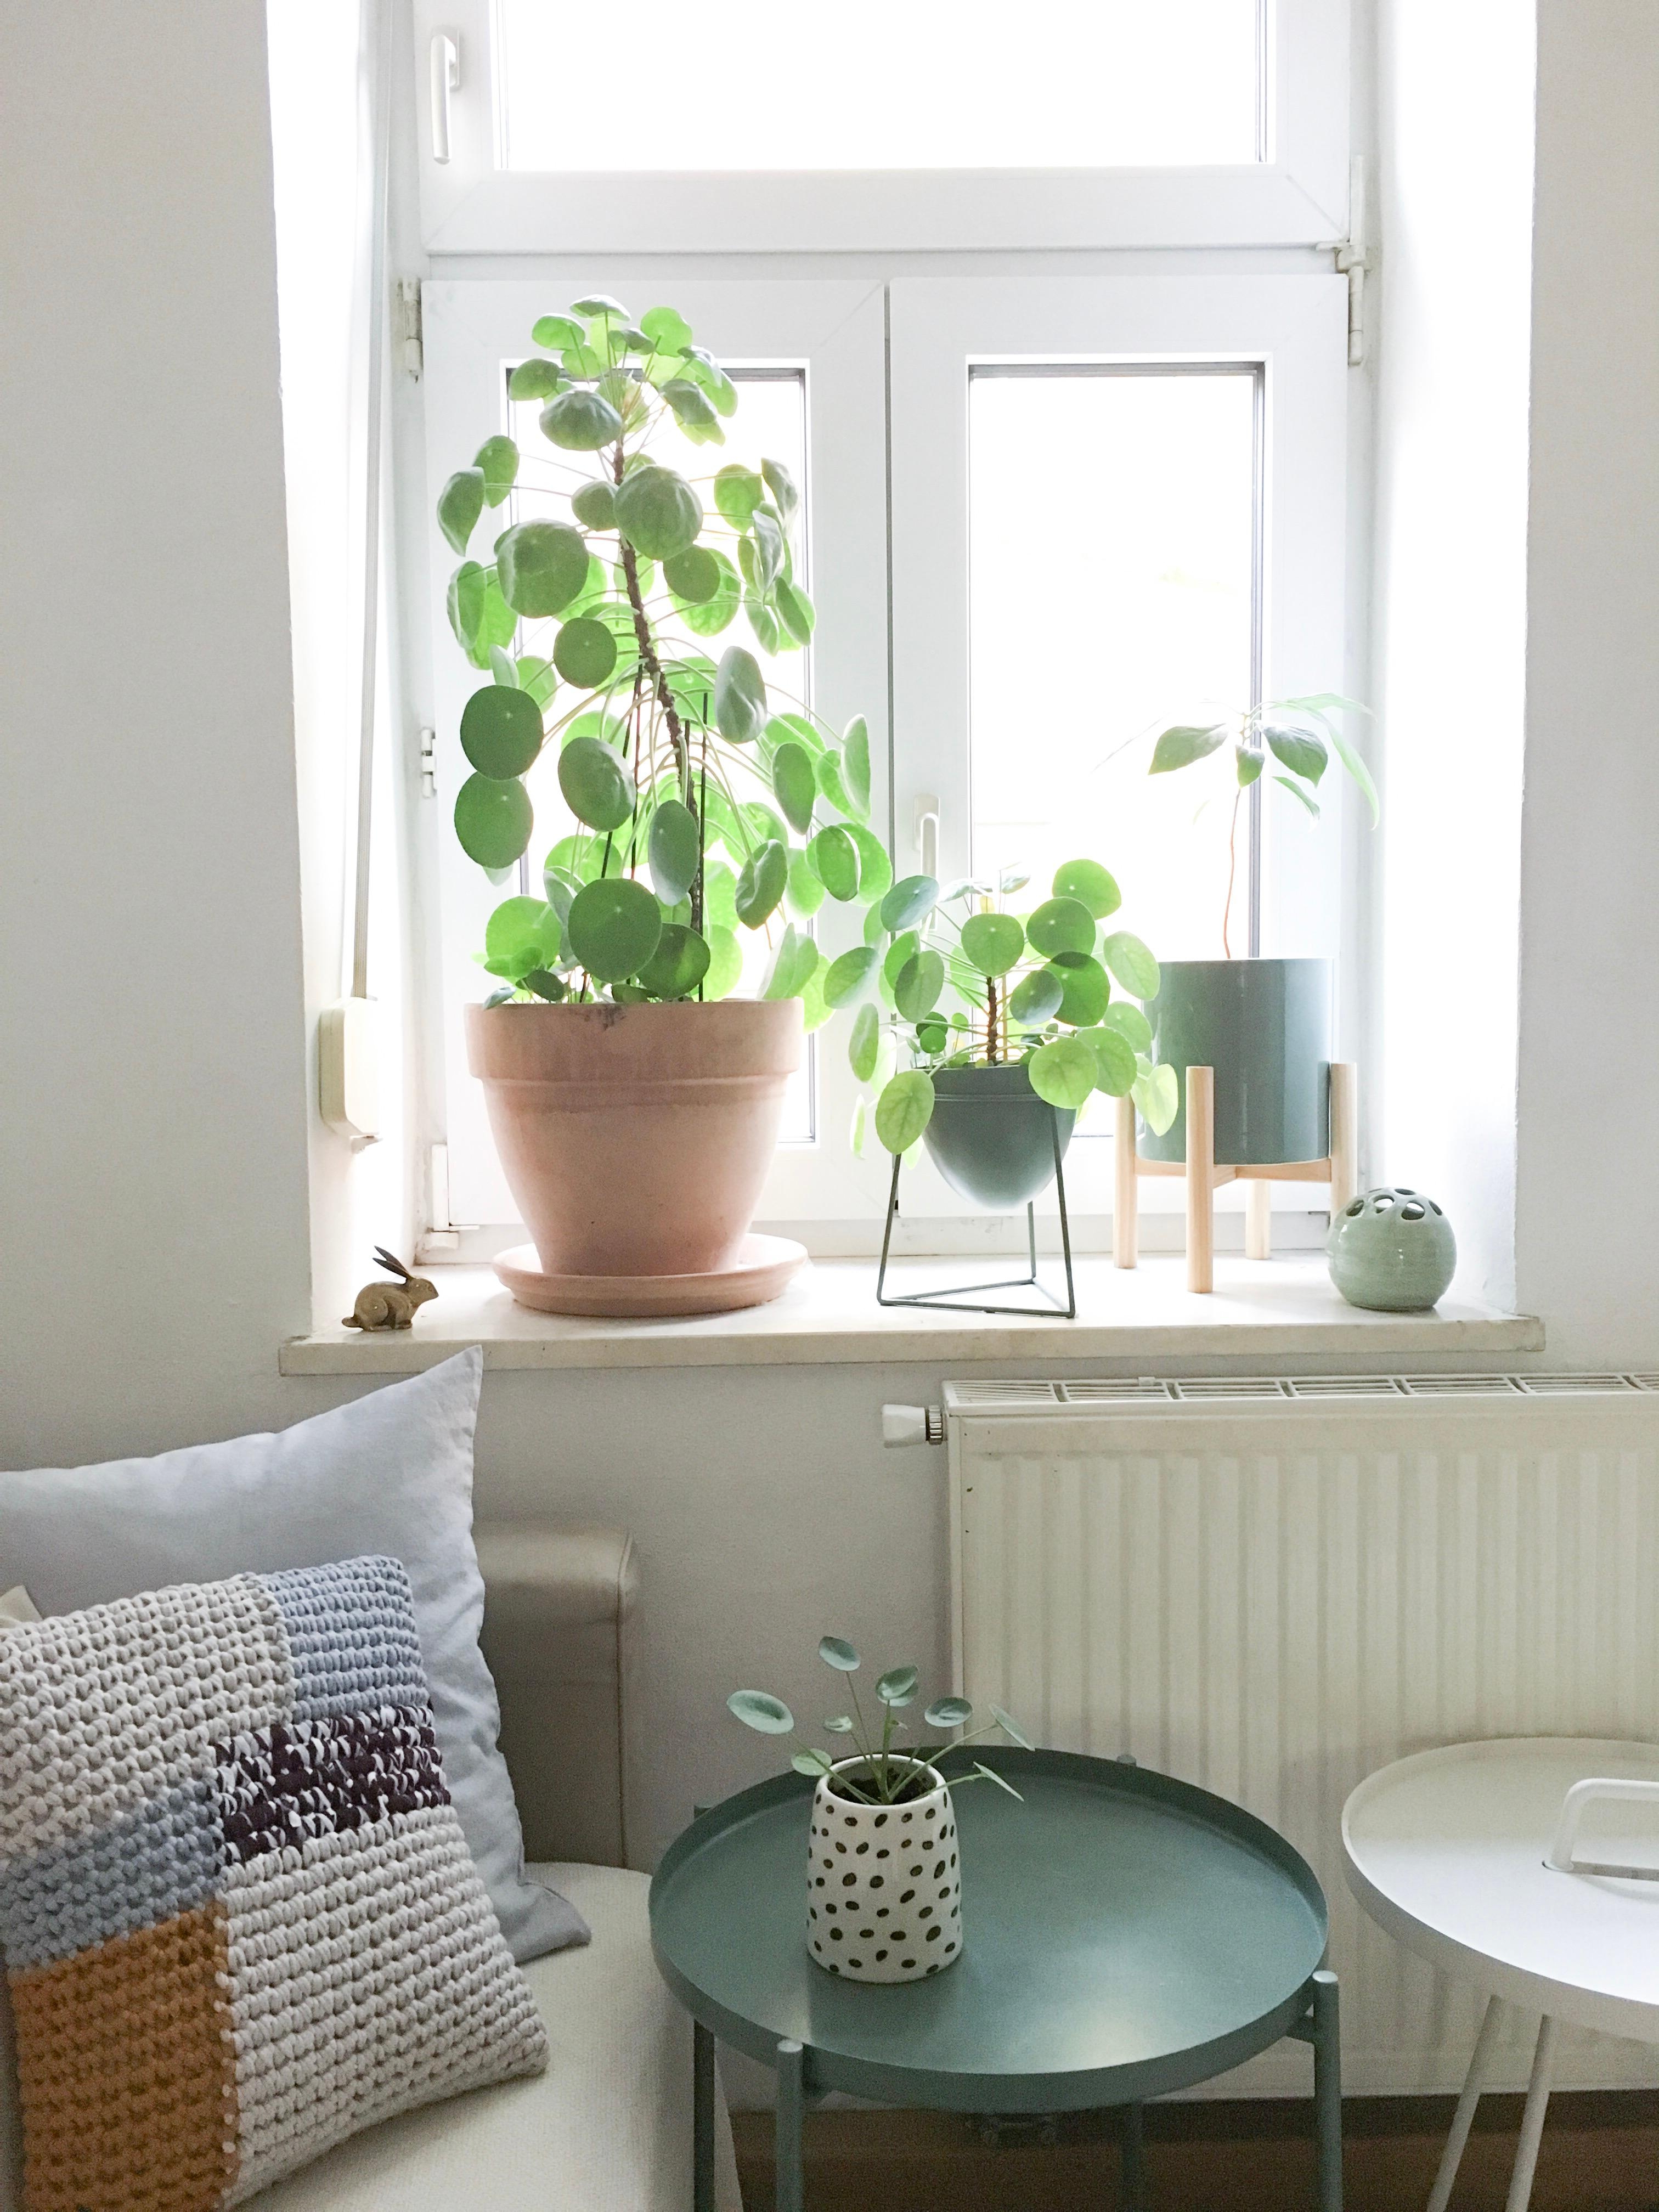 #plants #grün #wohnzimmer #window #couch #textiles #lumikello 